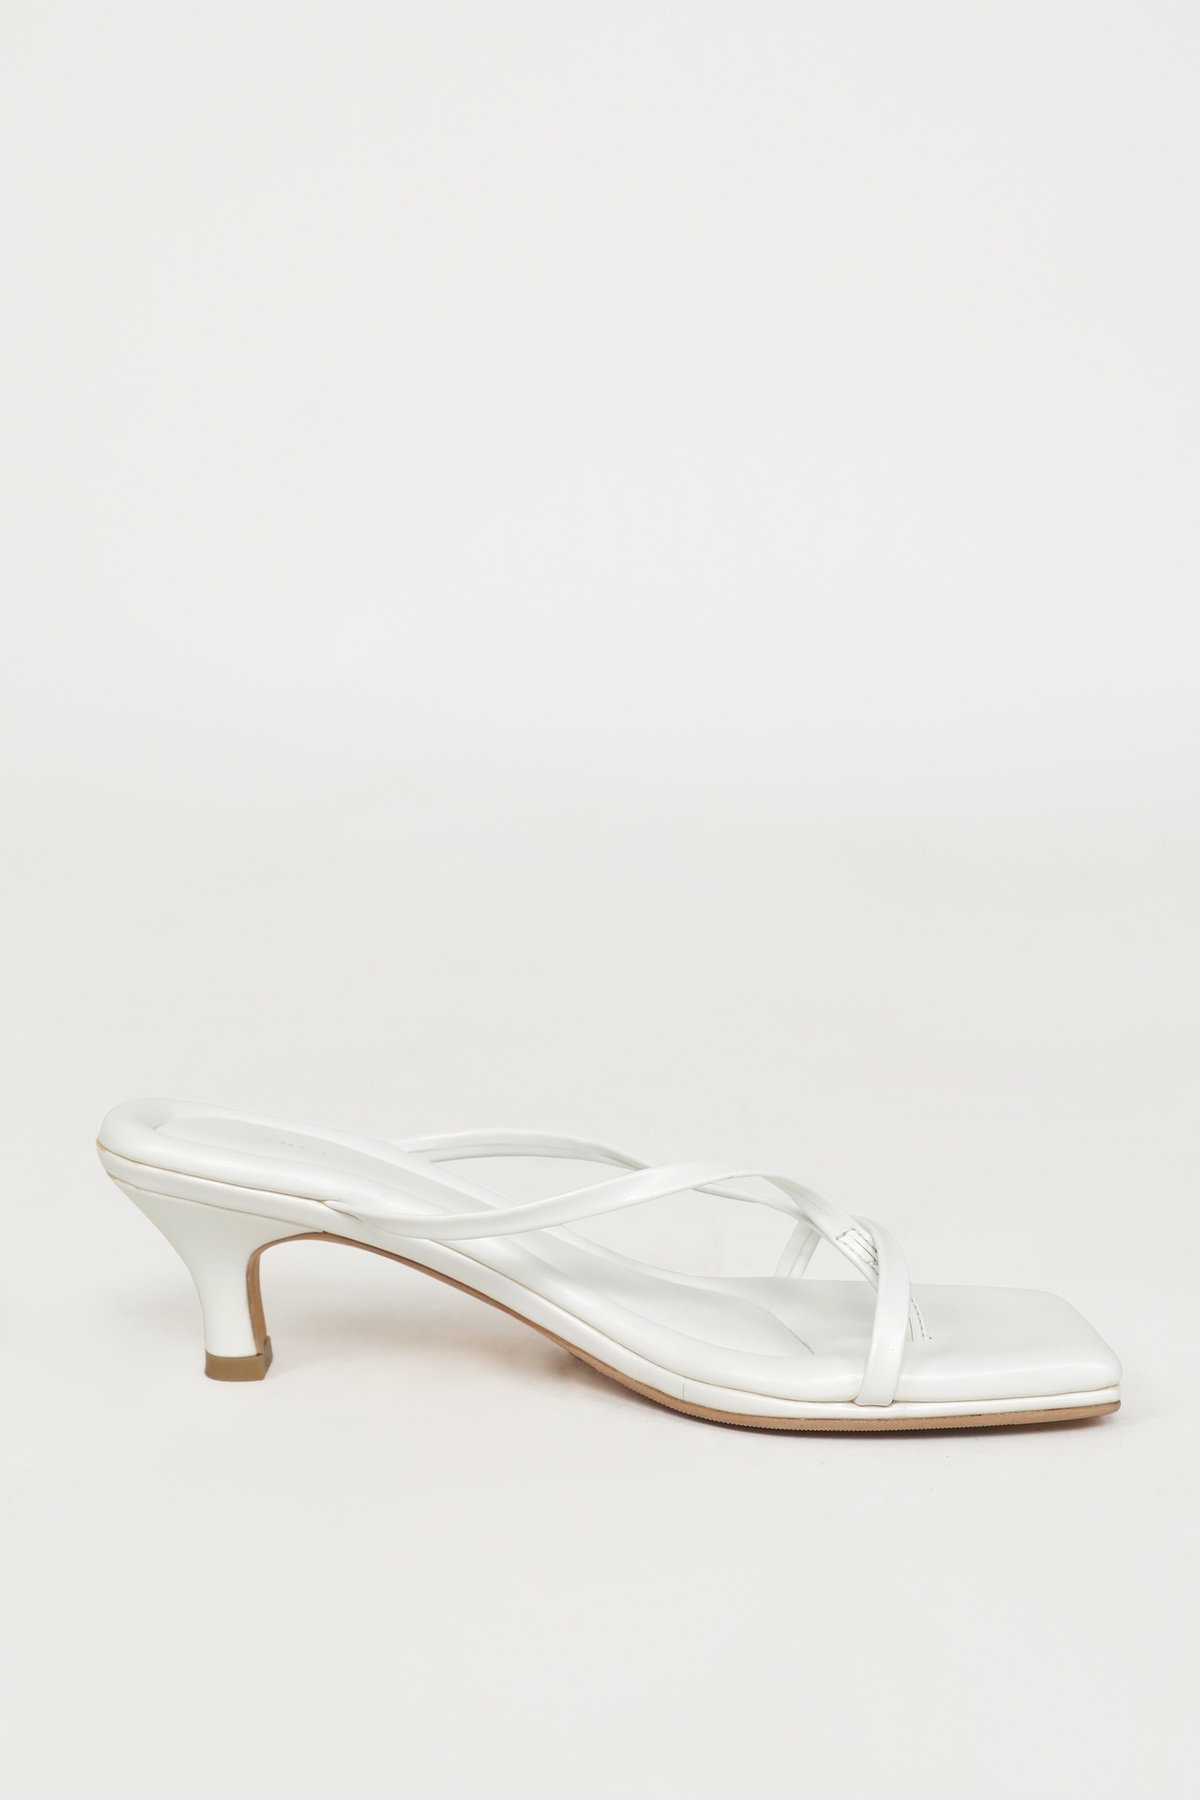 TTR x Sevieyanashoes Klaudia Heels (White)